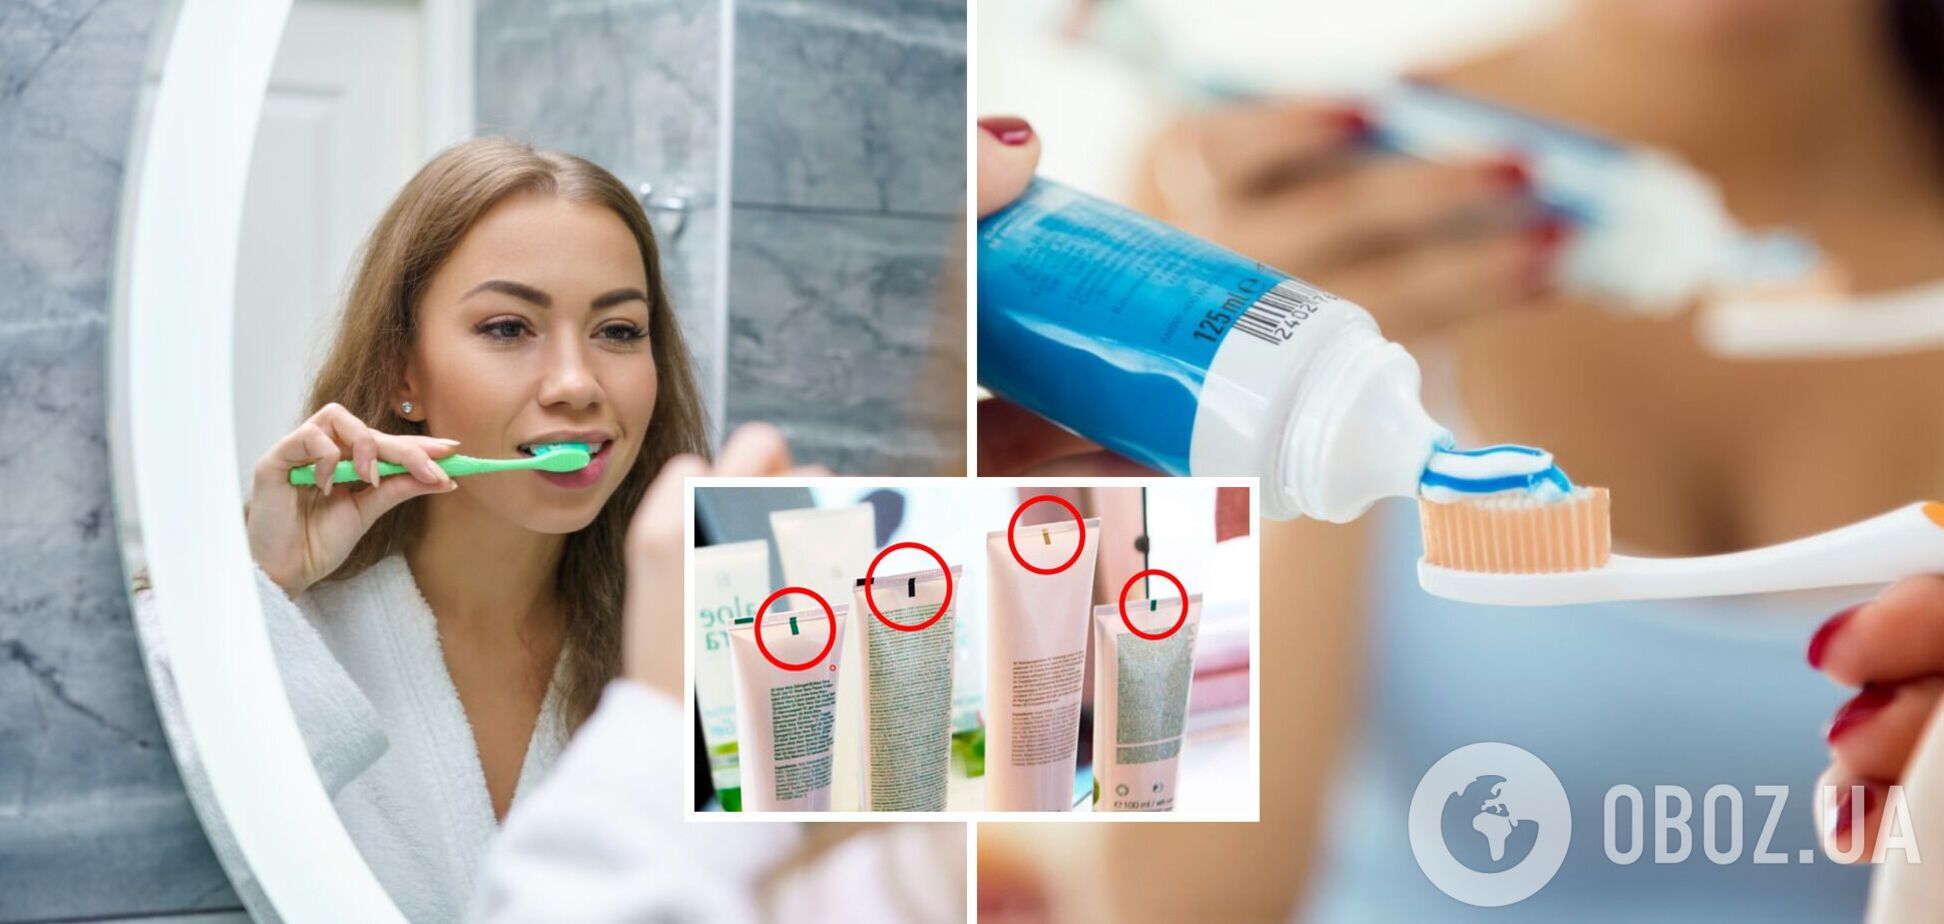 Зачем нужны цветные полоски на зубной пасте: развенчиваем распространенный миф